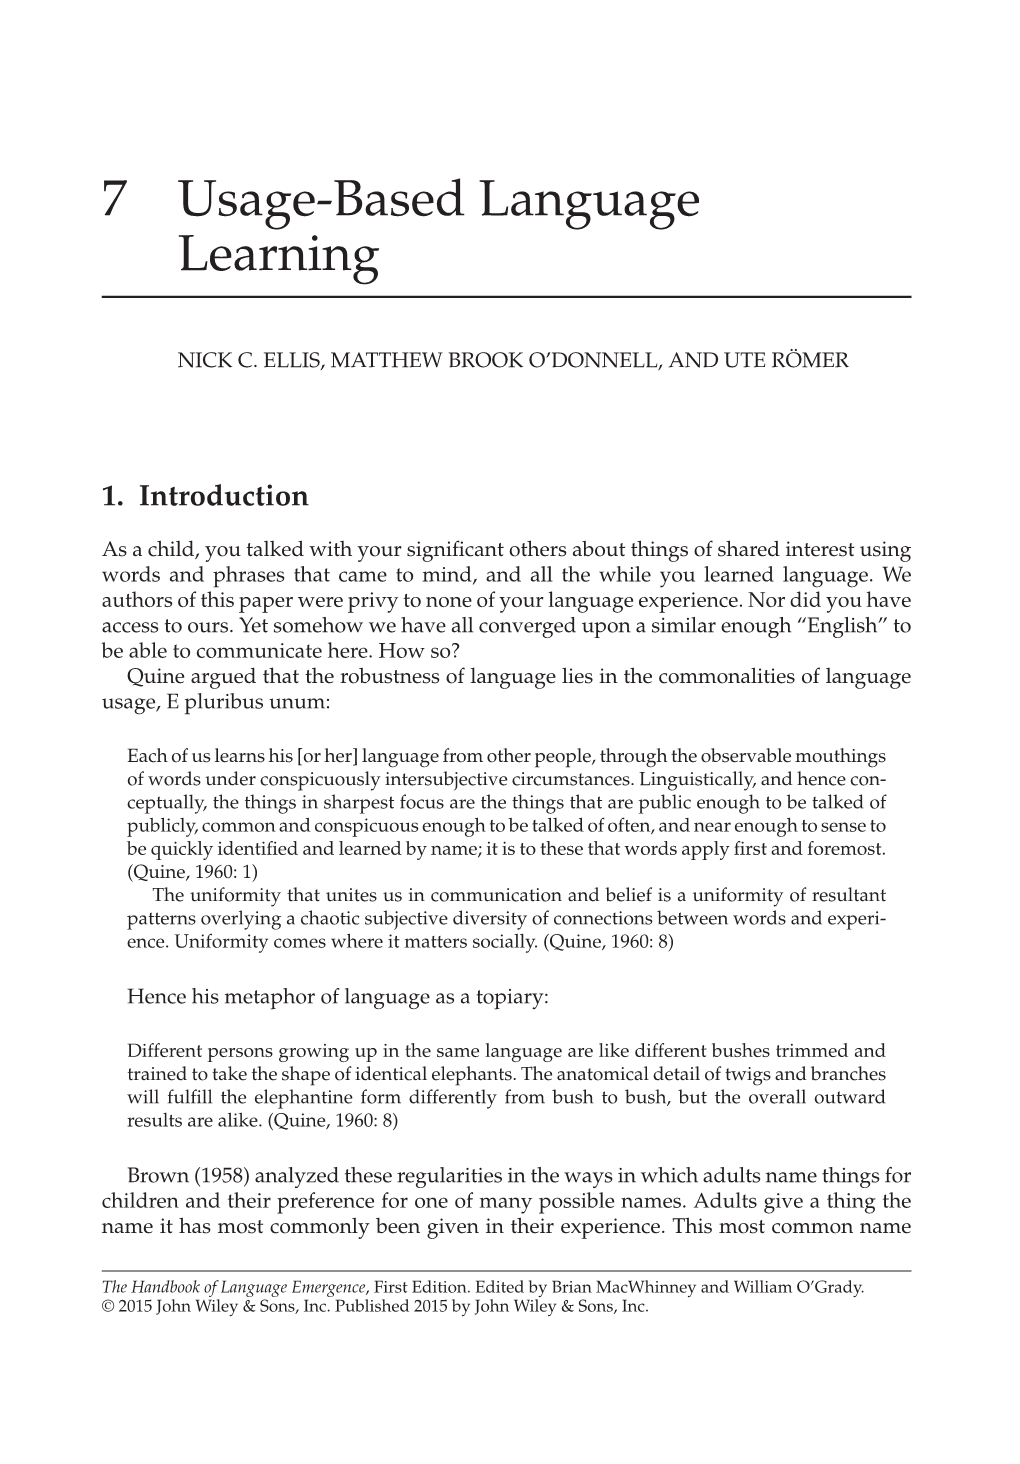 Usage-Based Language Learning